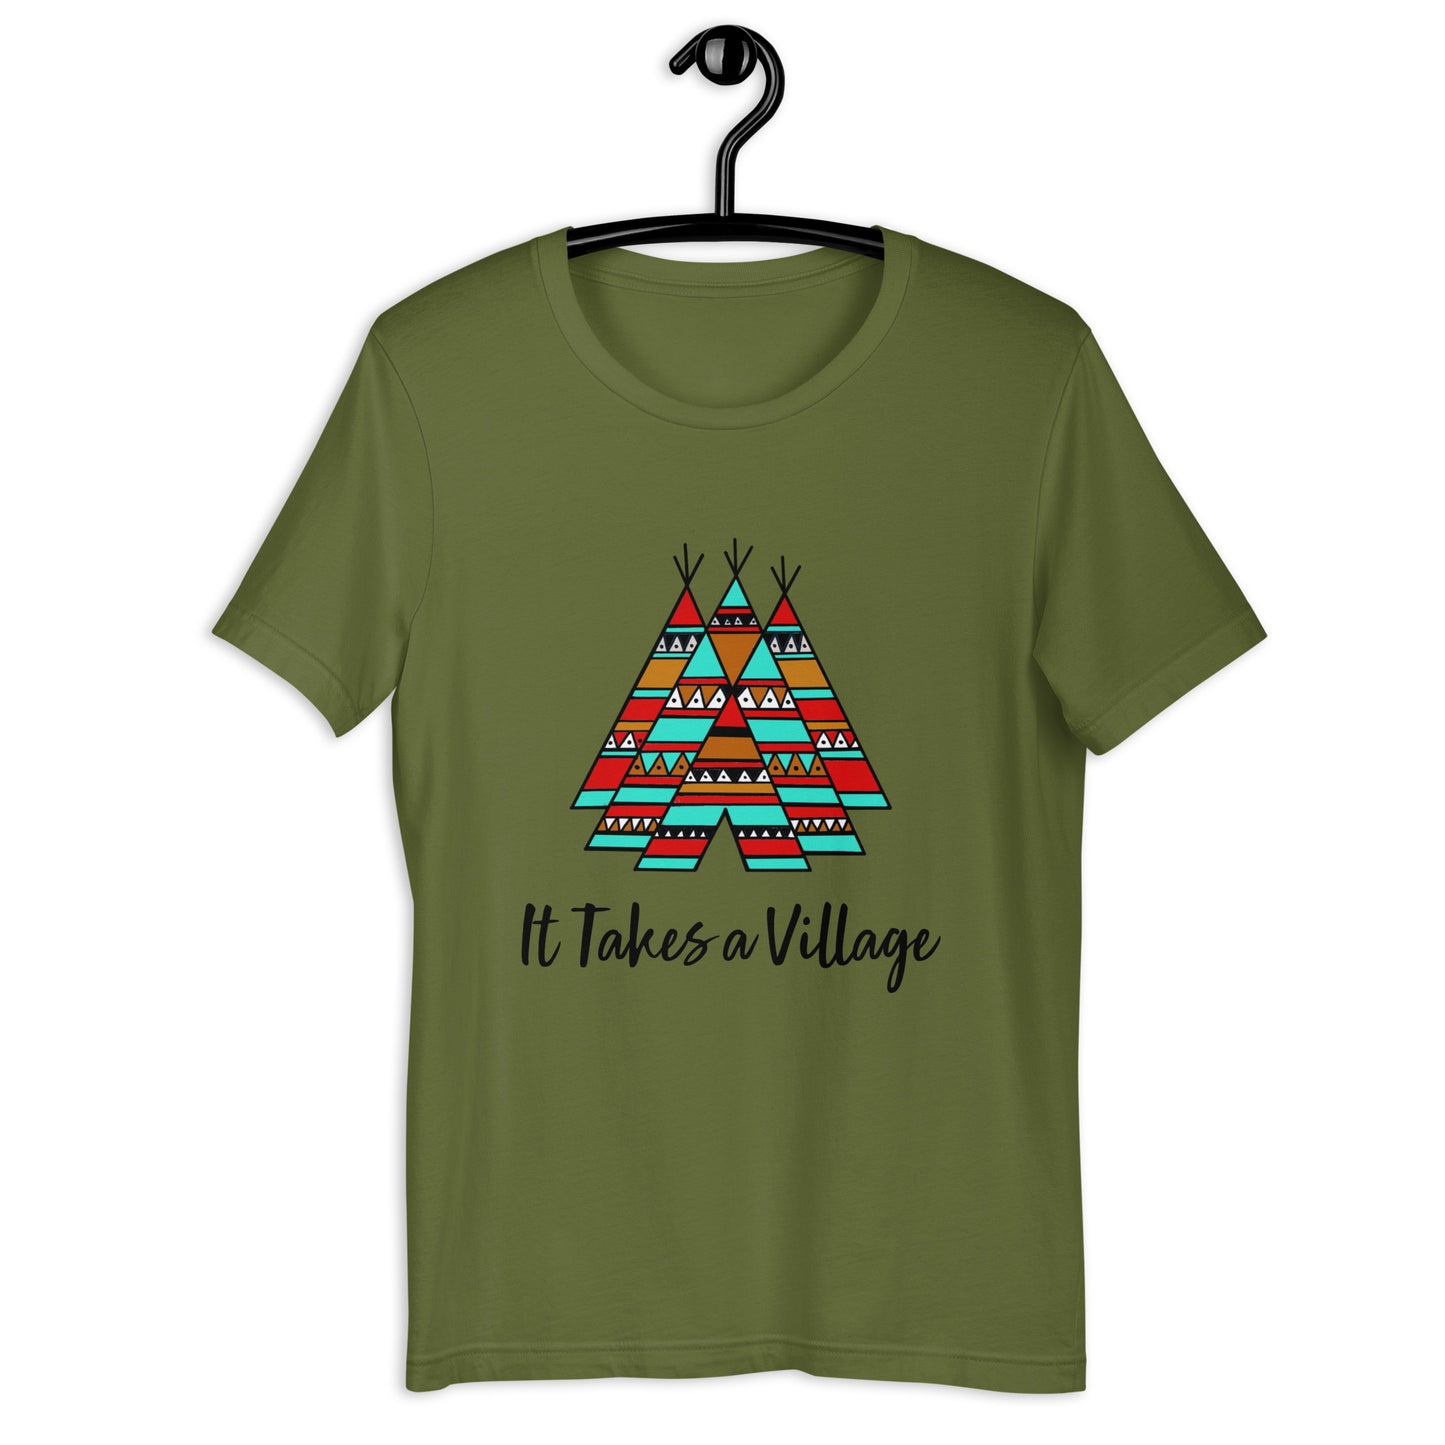 (It Takes a Village) Unisex t-shirt